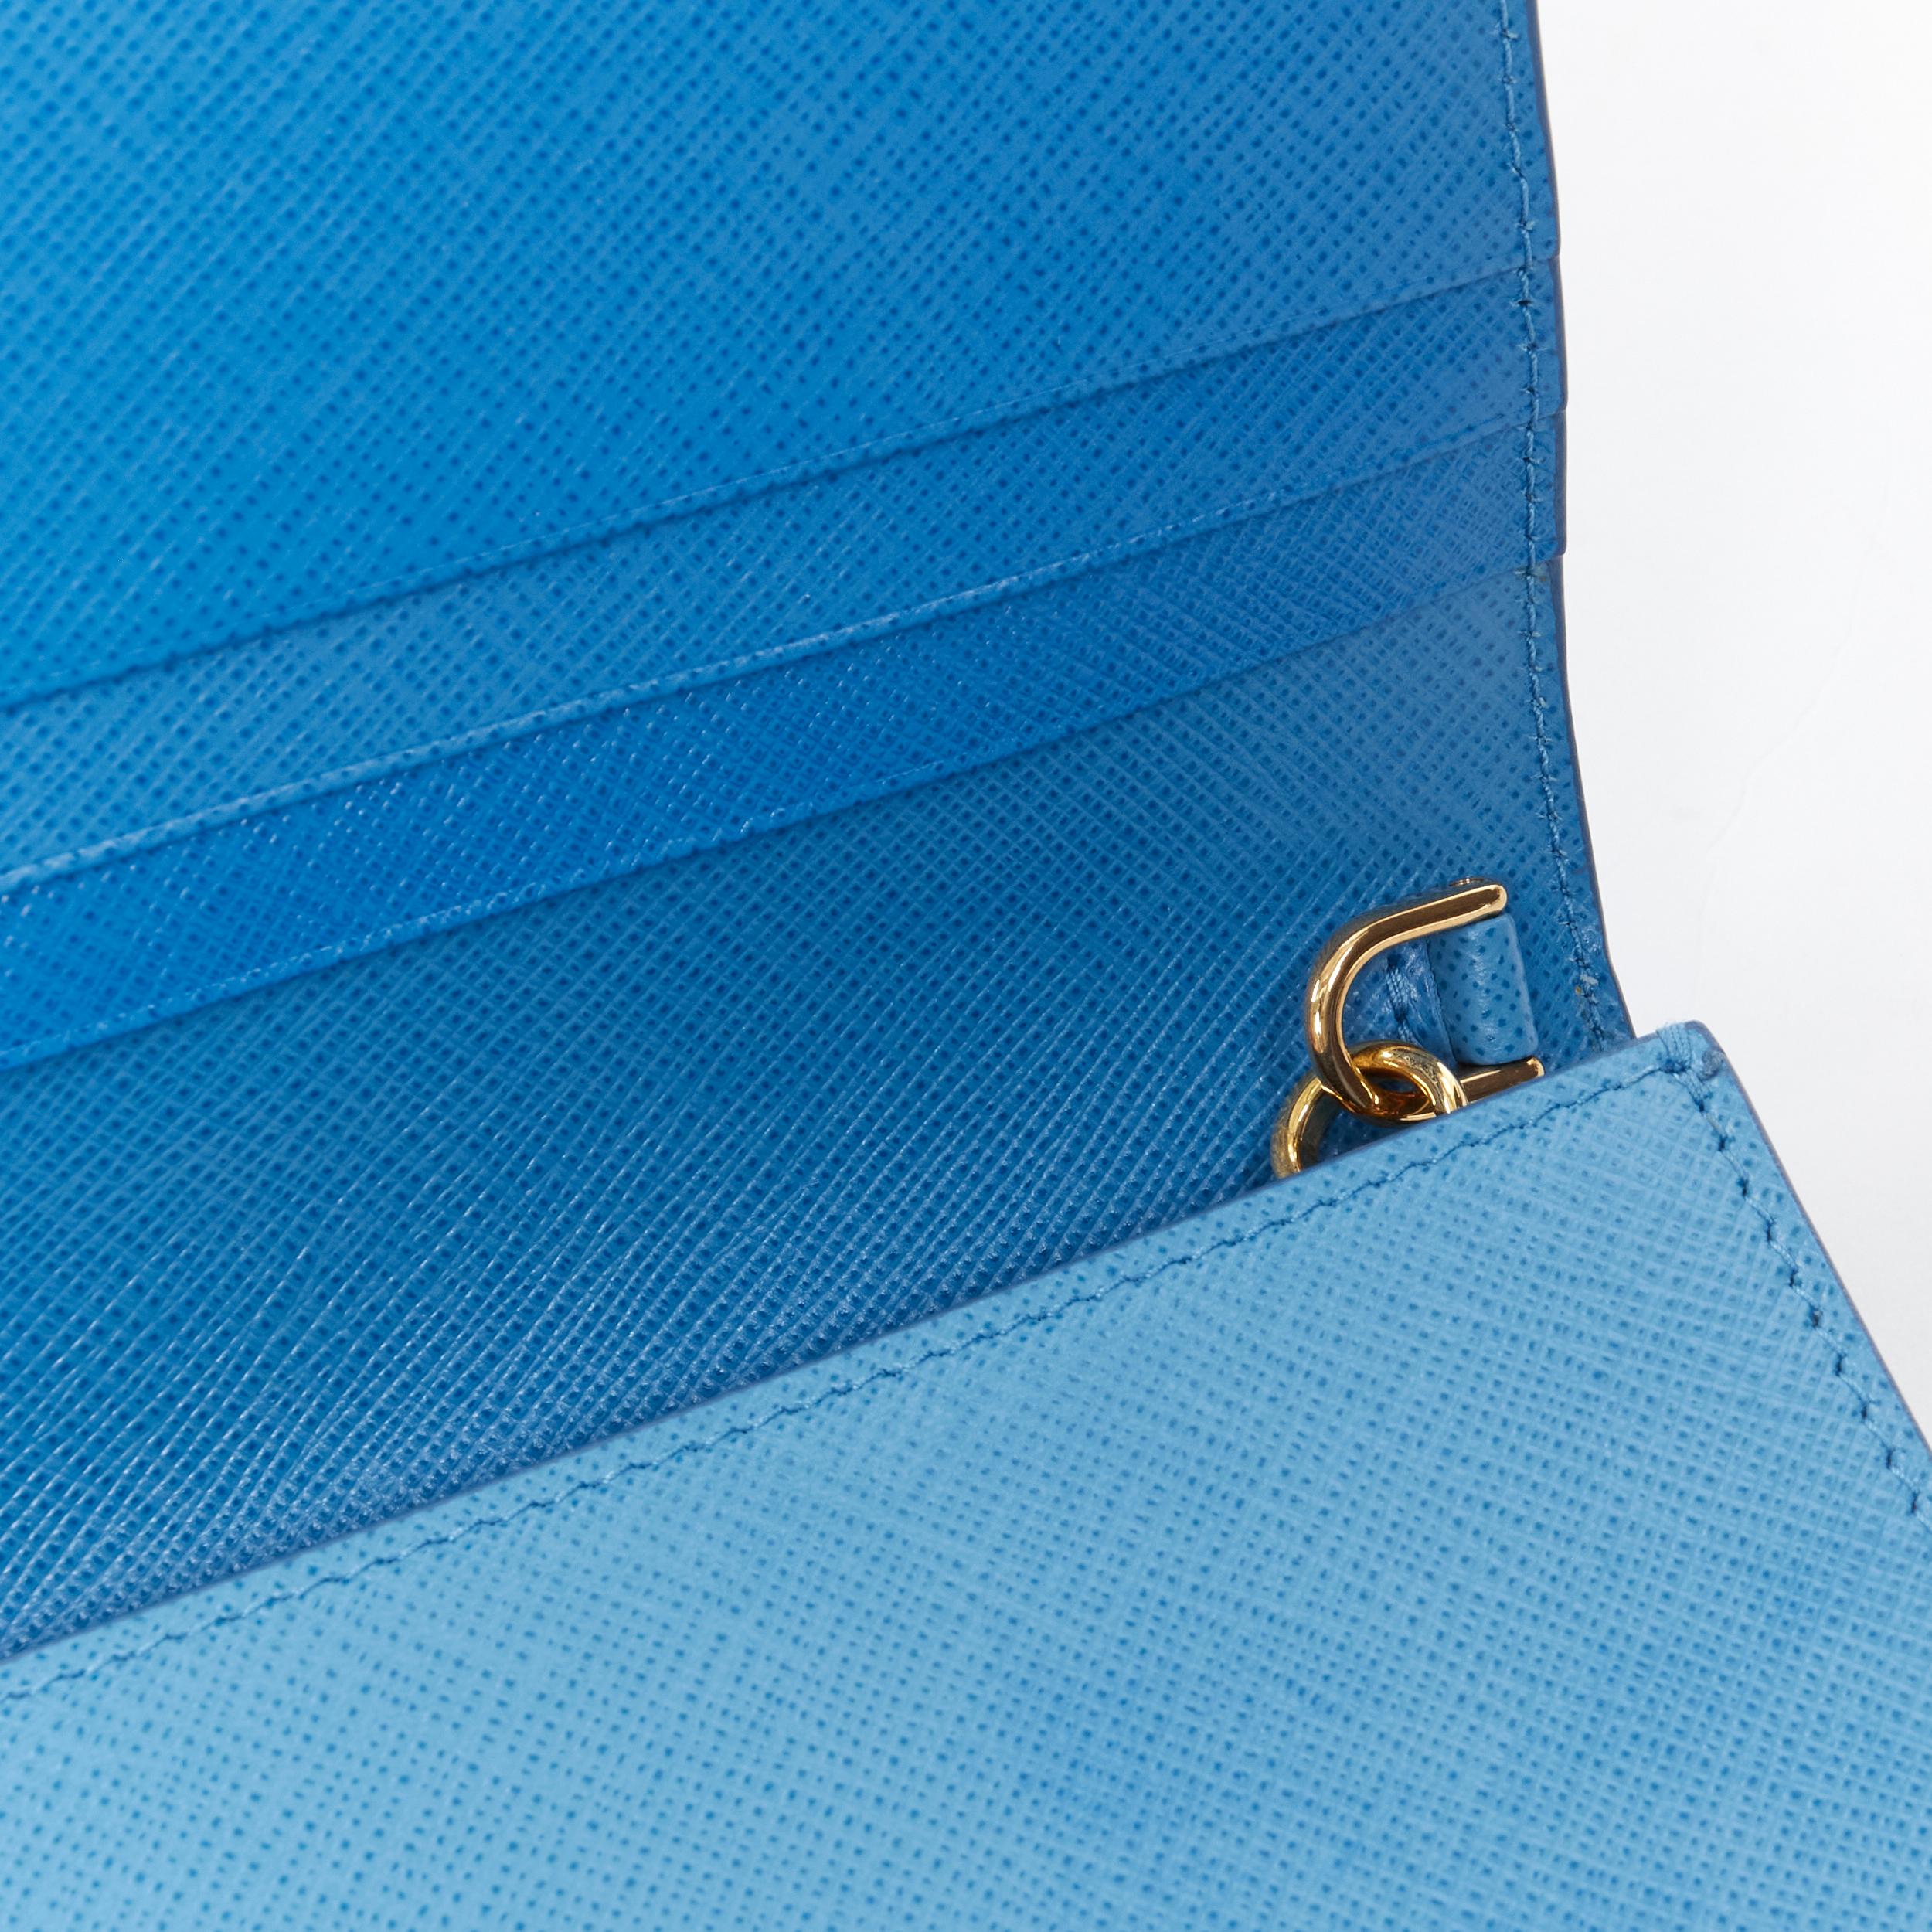 PRADA blue saffiano leather gold logo chain crossbody long wallet clutch bag WOC 3